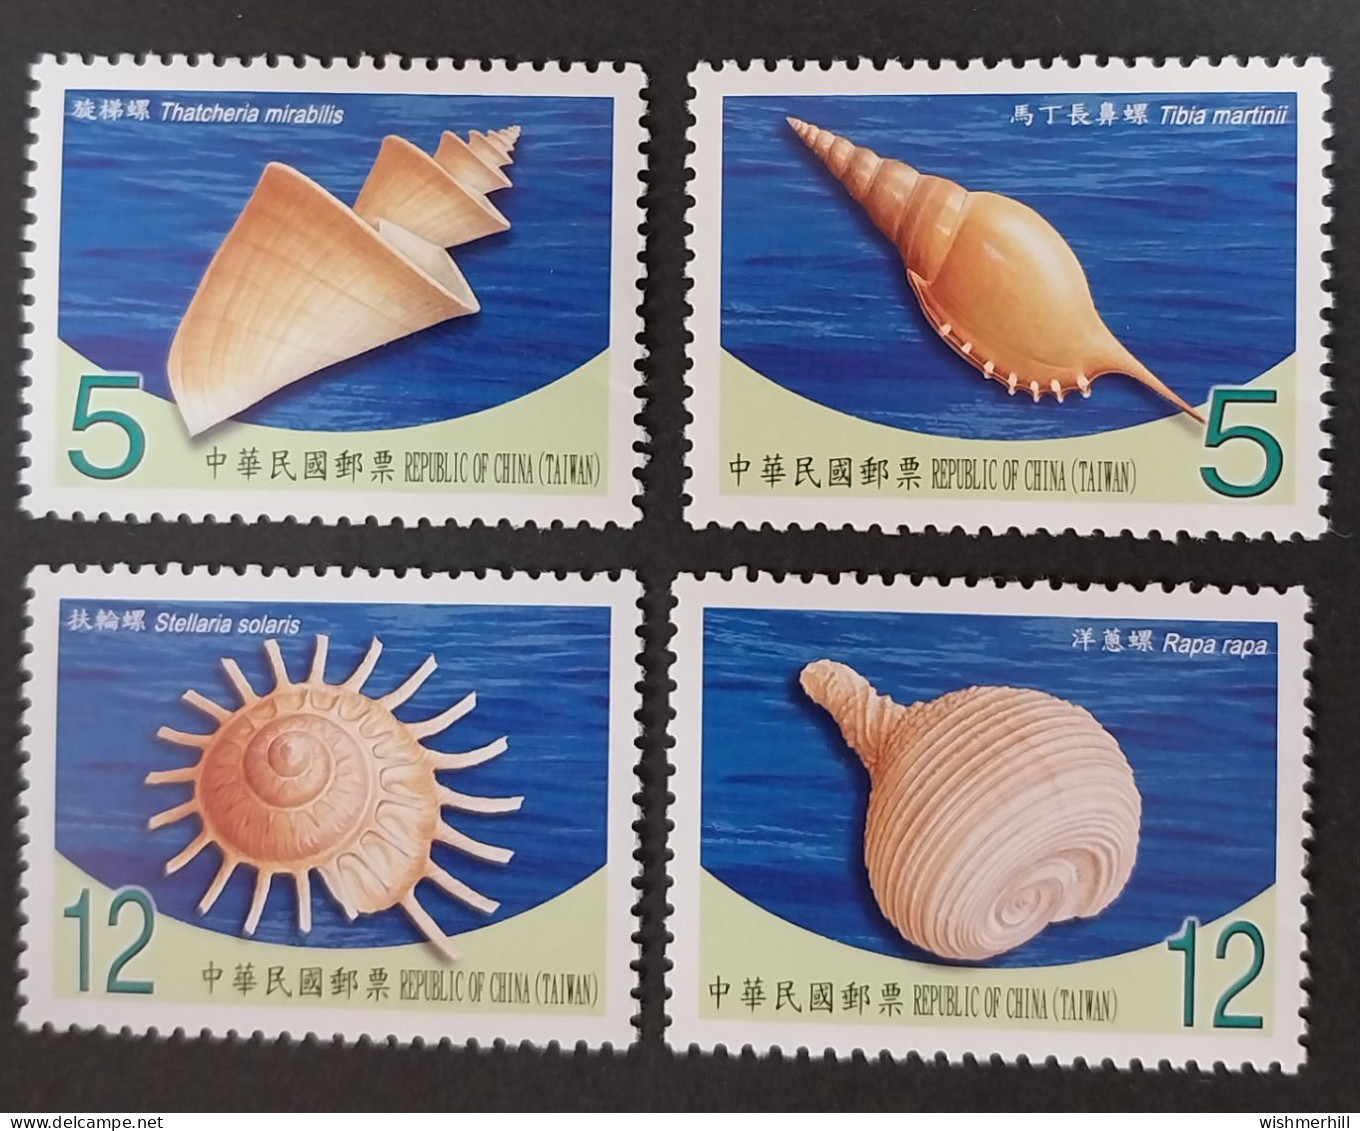 Coquillages Shells // Série Complète Neuve ** MNH ; Formose Taiwan 3310/3313 (2010) Cote 3.50 € - Ungebraucht